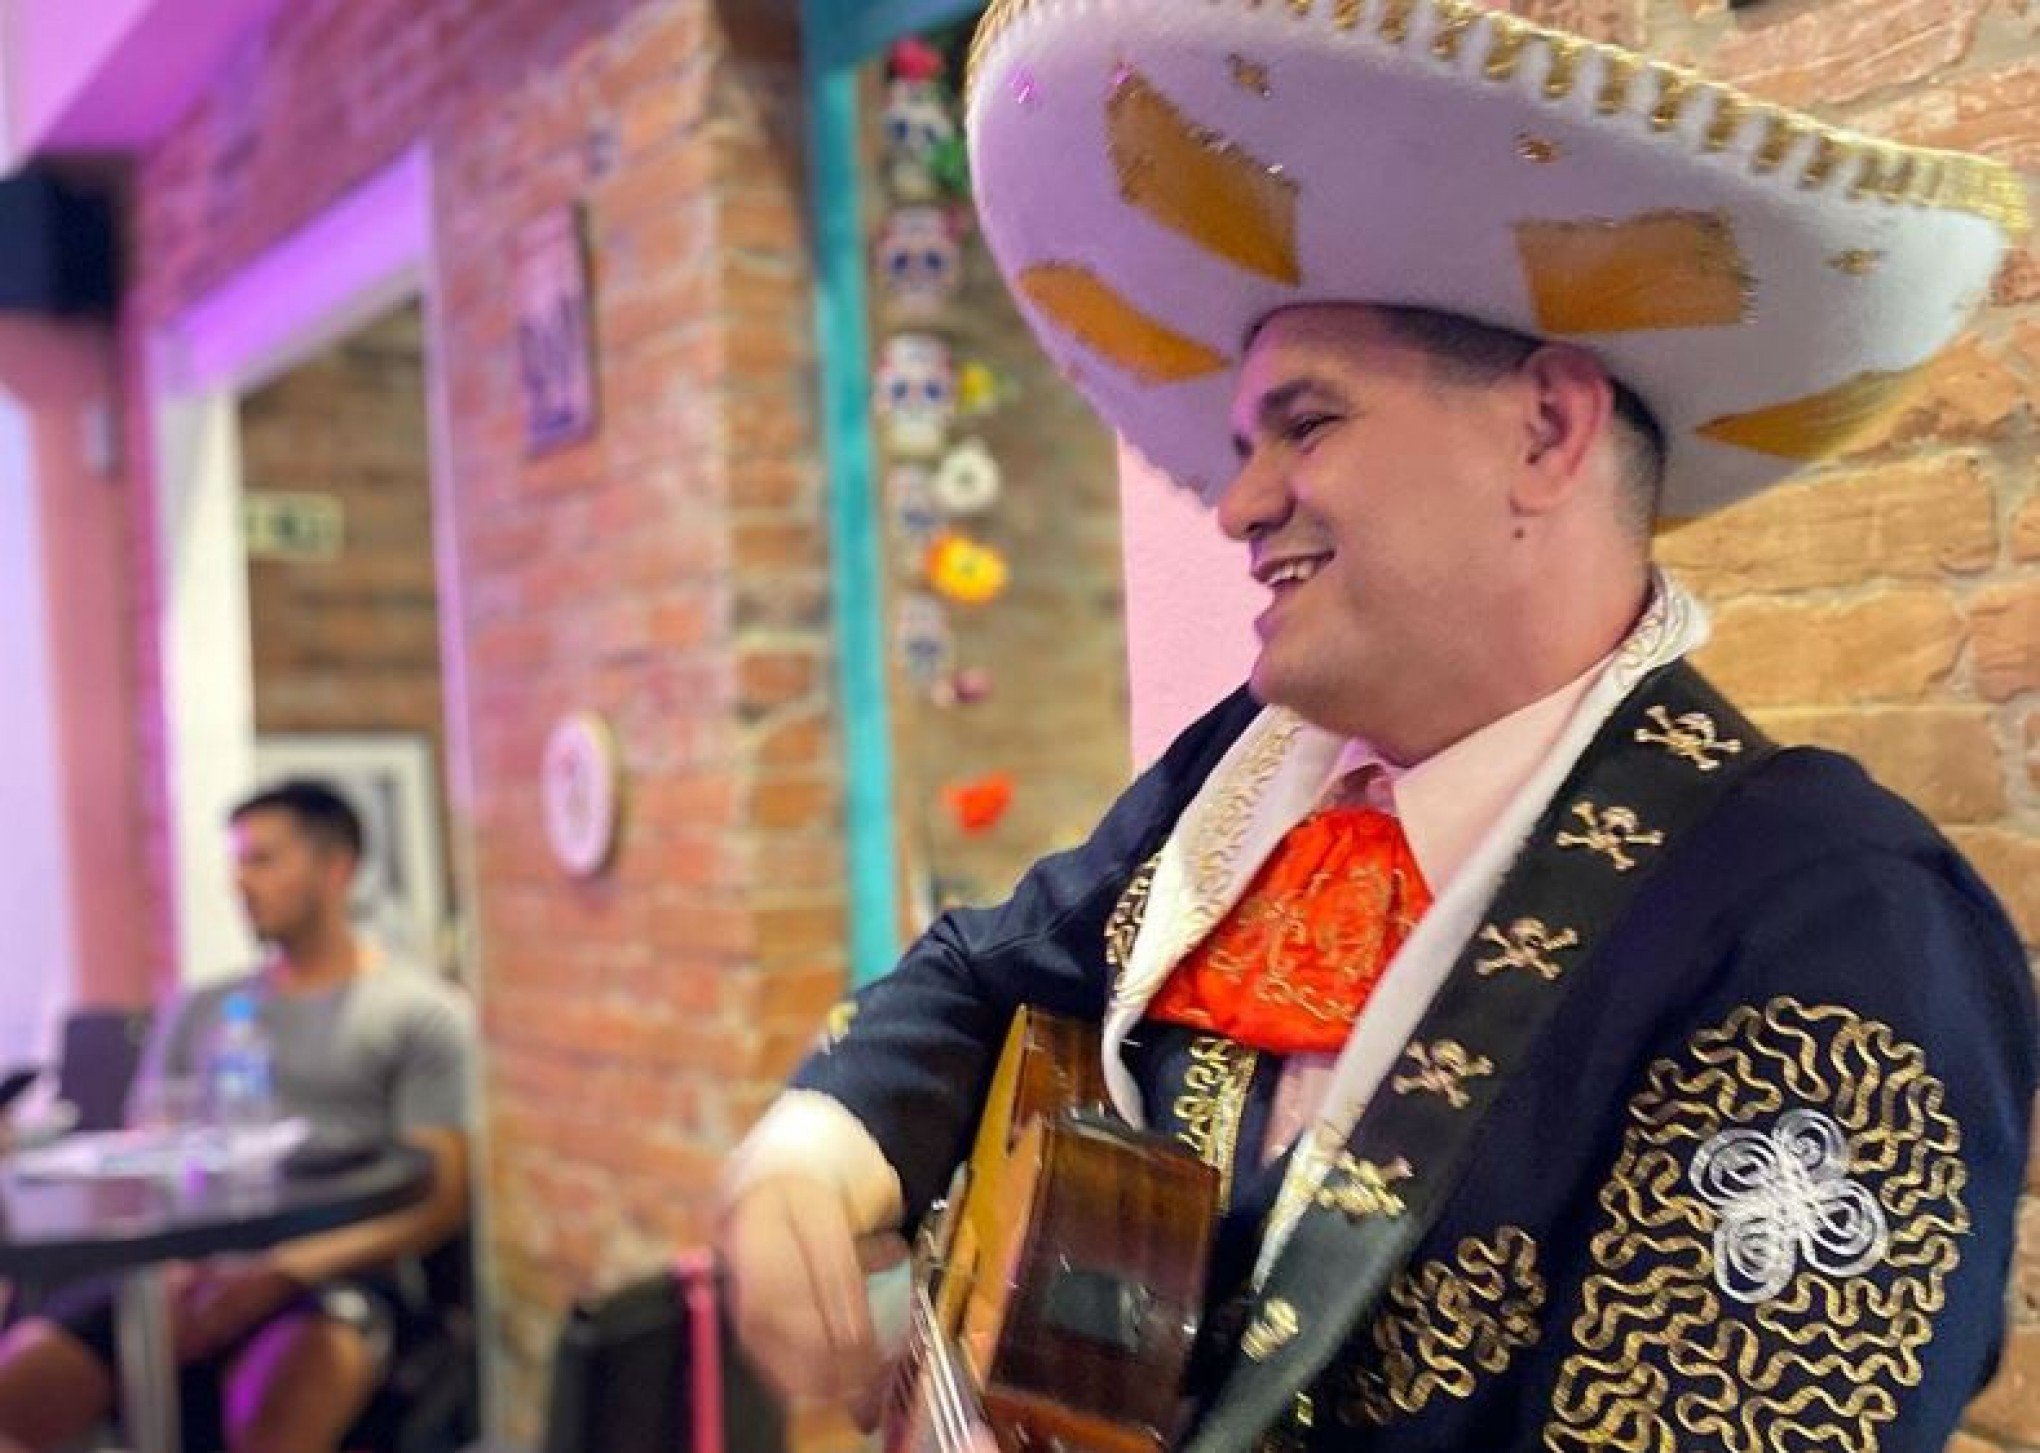 Comida mexicana, drinks e mariachi: como será o Dia de Los Muertos em doceria de Novo Hamburgo